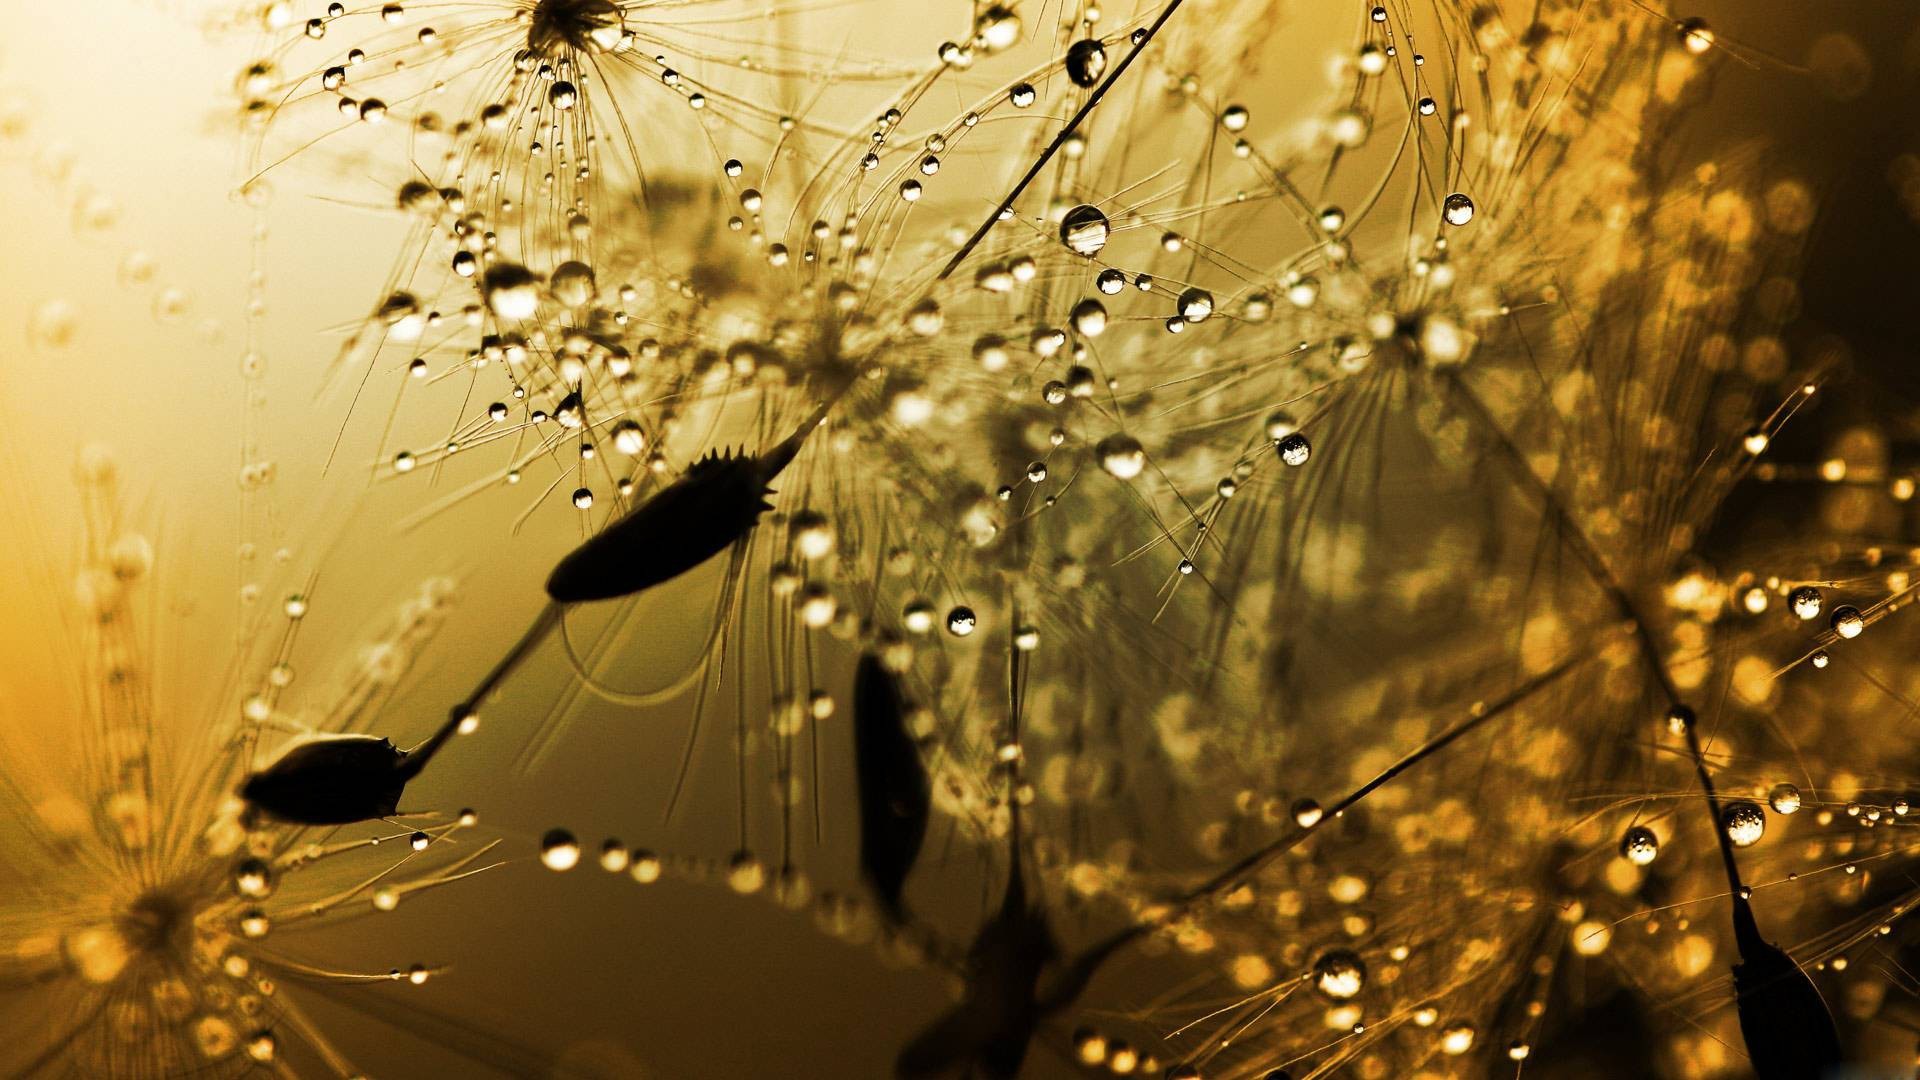 52+] Beautiful Rain Wallpaper Desktop - WallpaperSafari